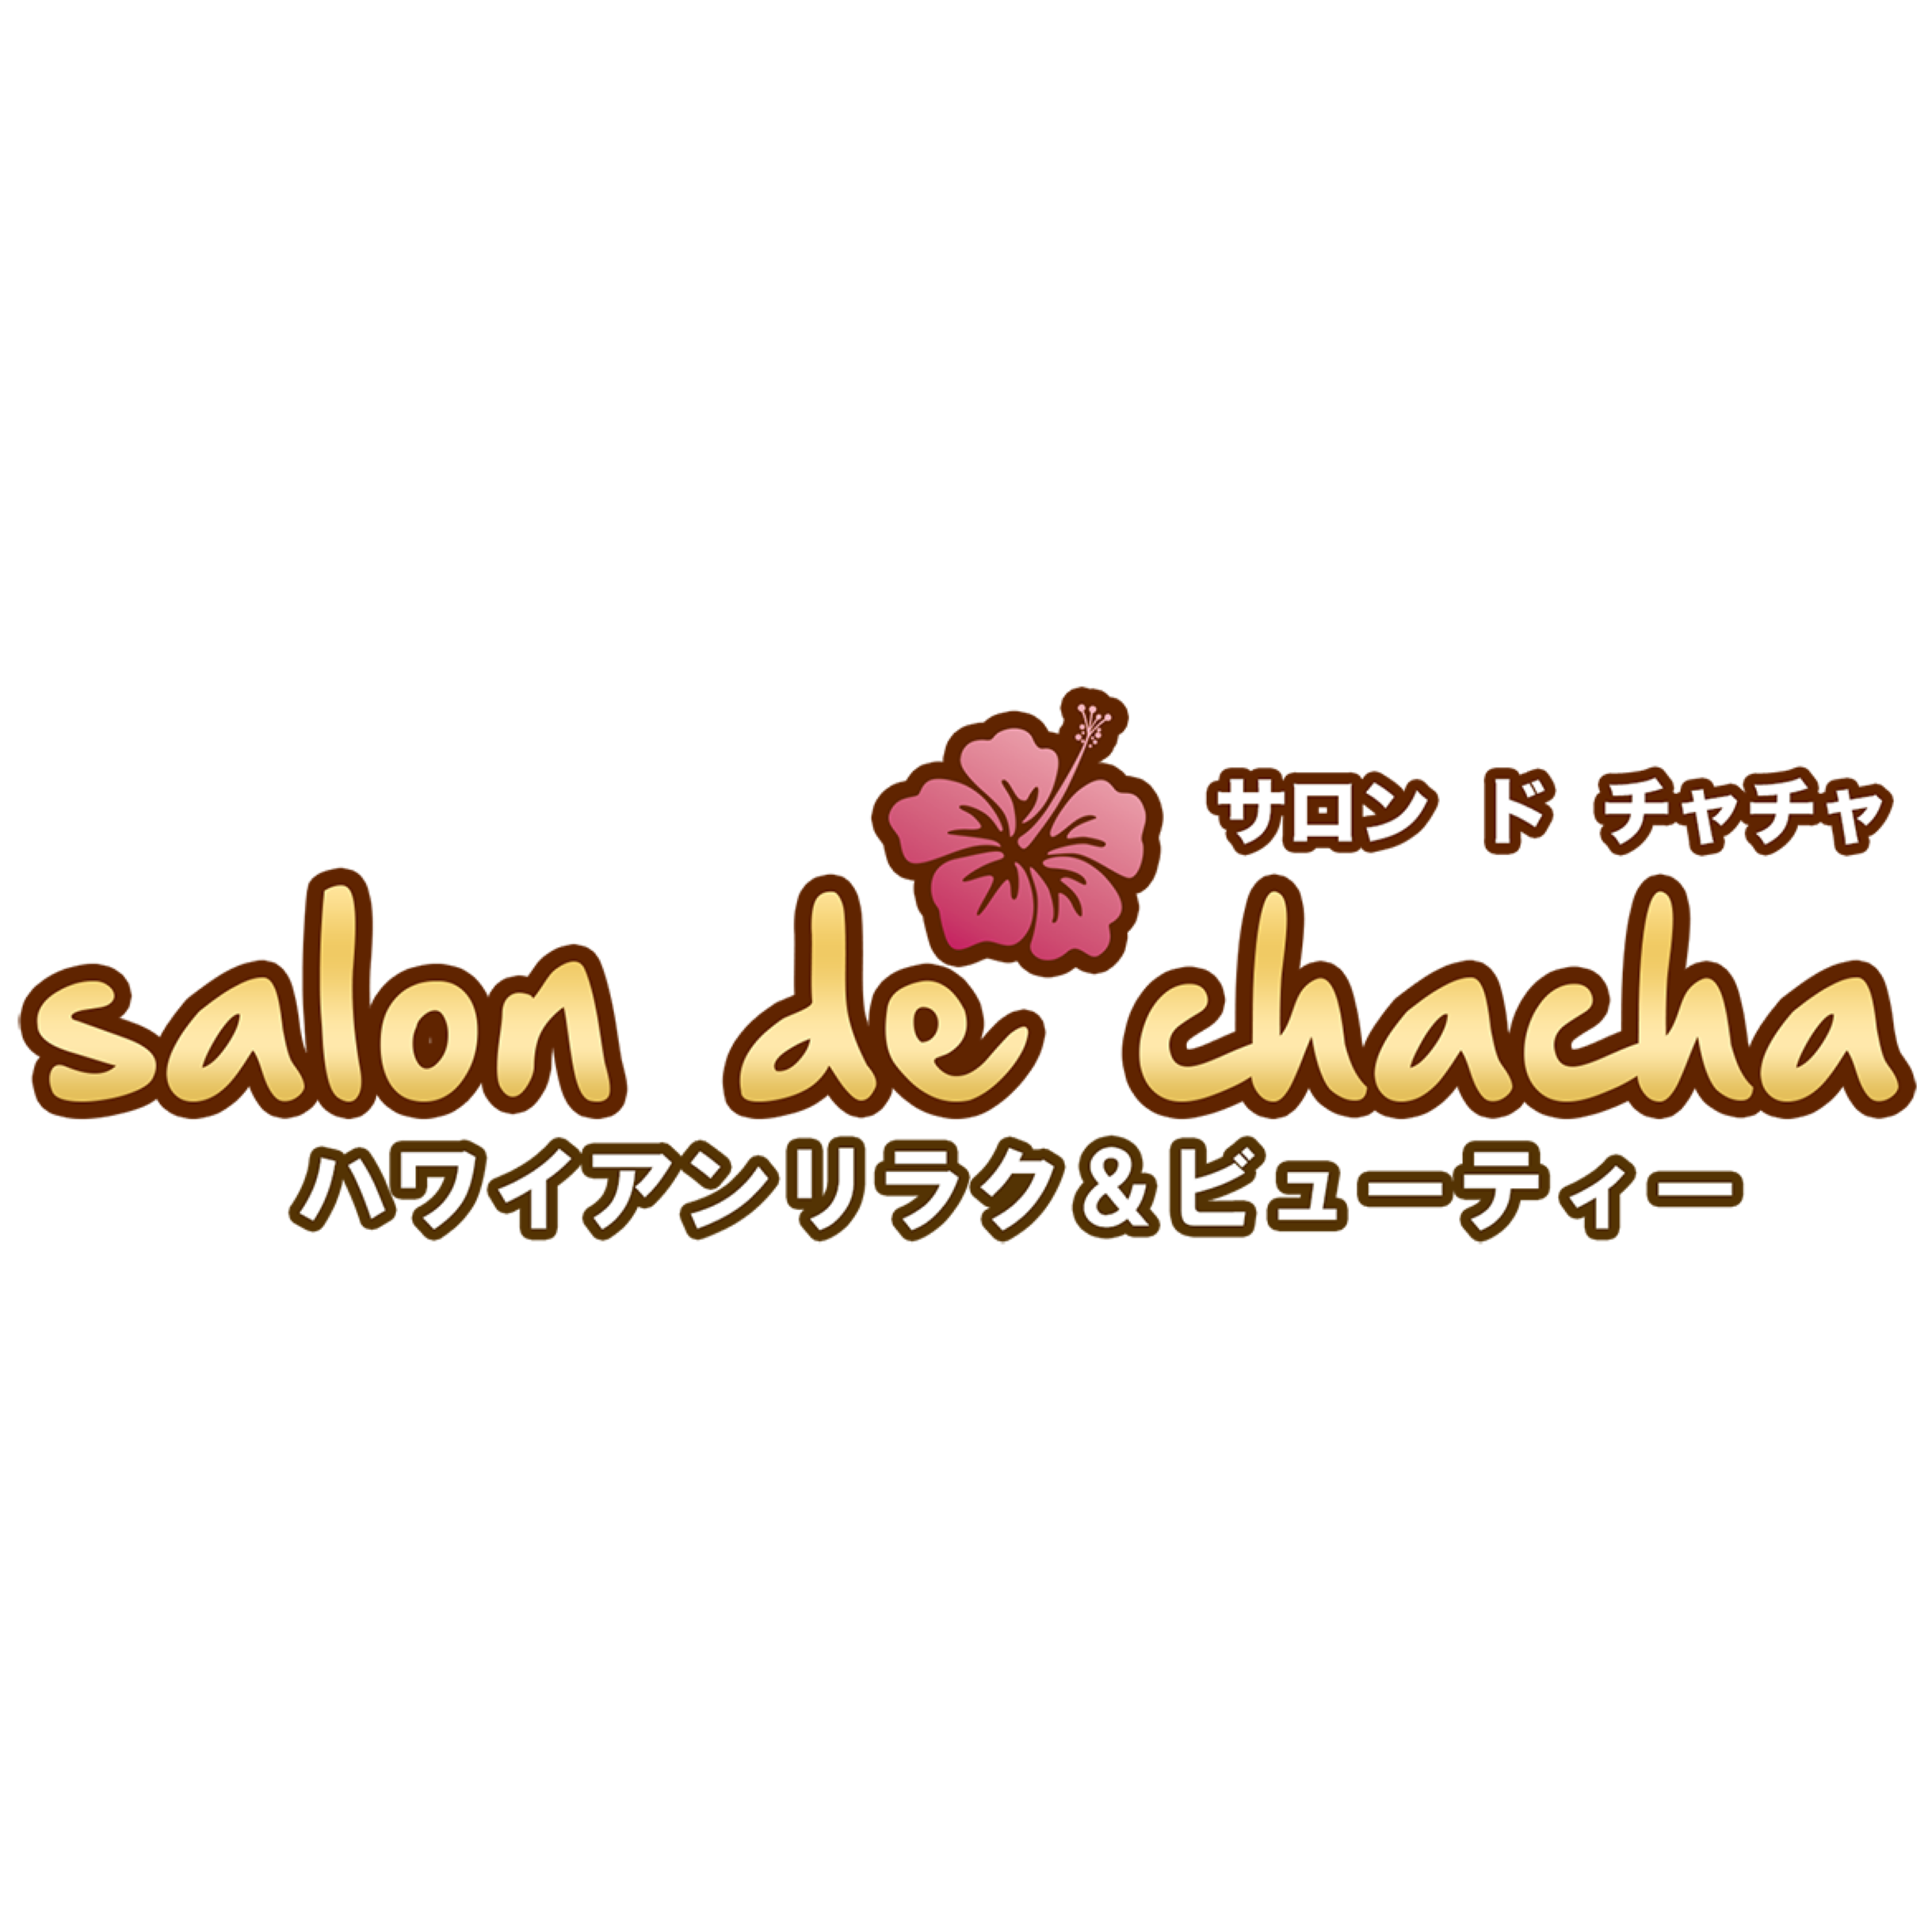 Salon de chacha 京都烏丸御池店〜ハワイアンリラク＆ビューティー〜 Logo